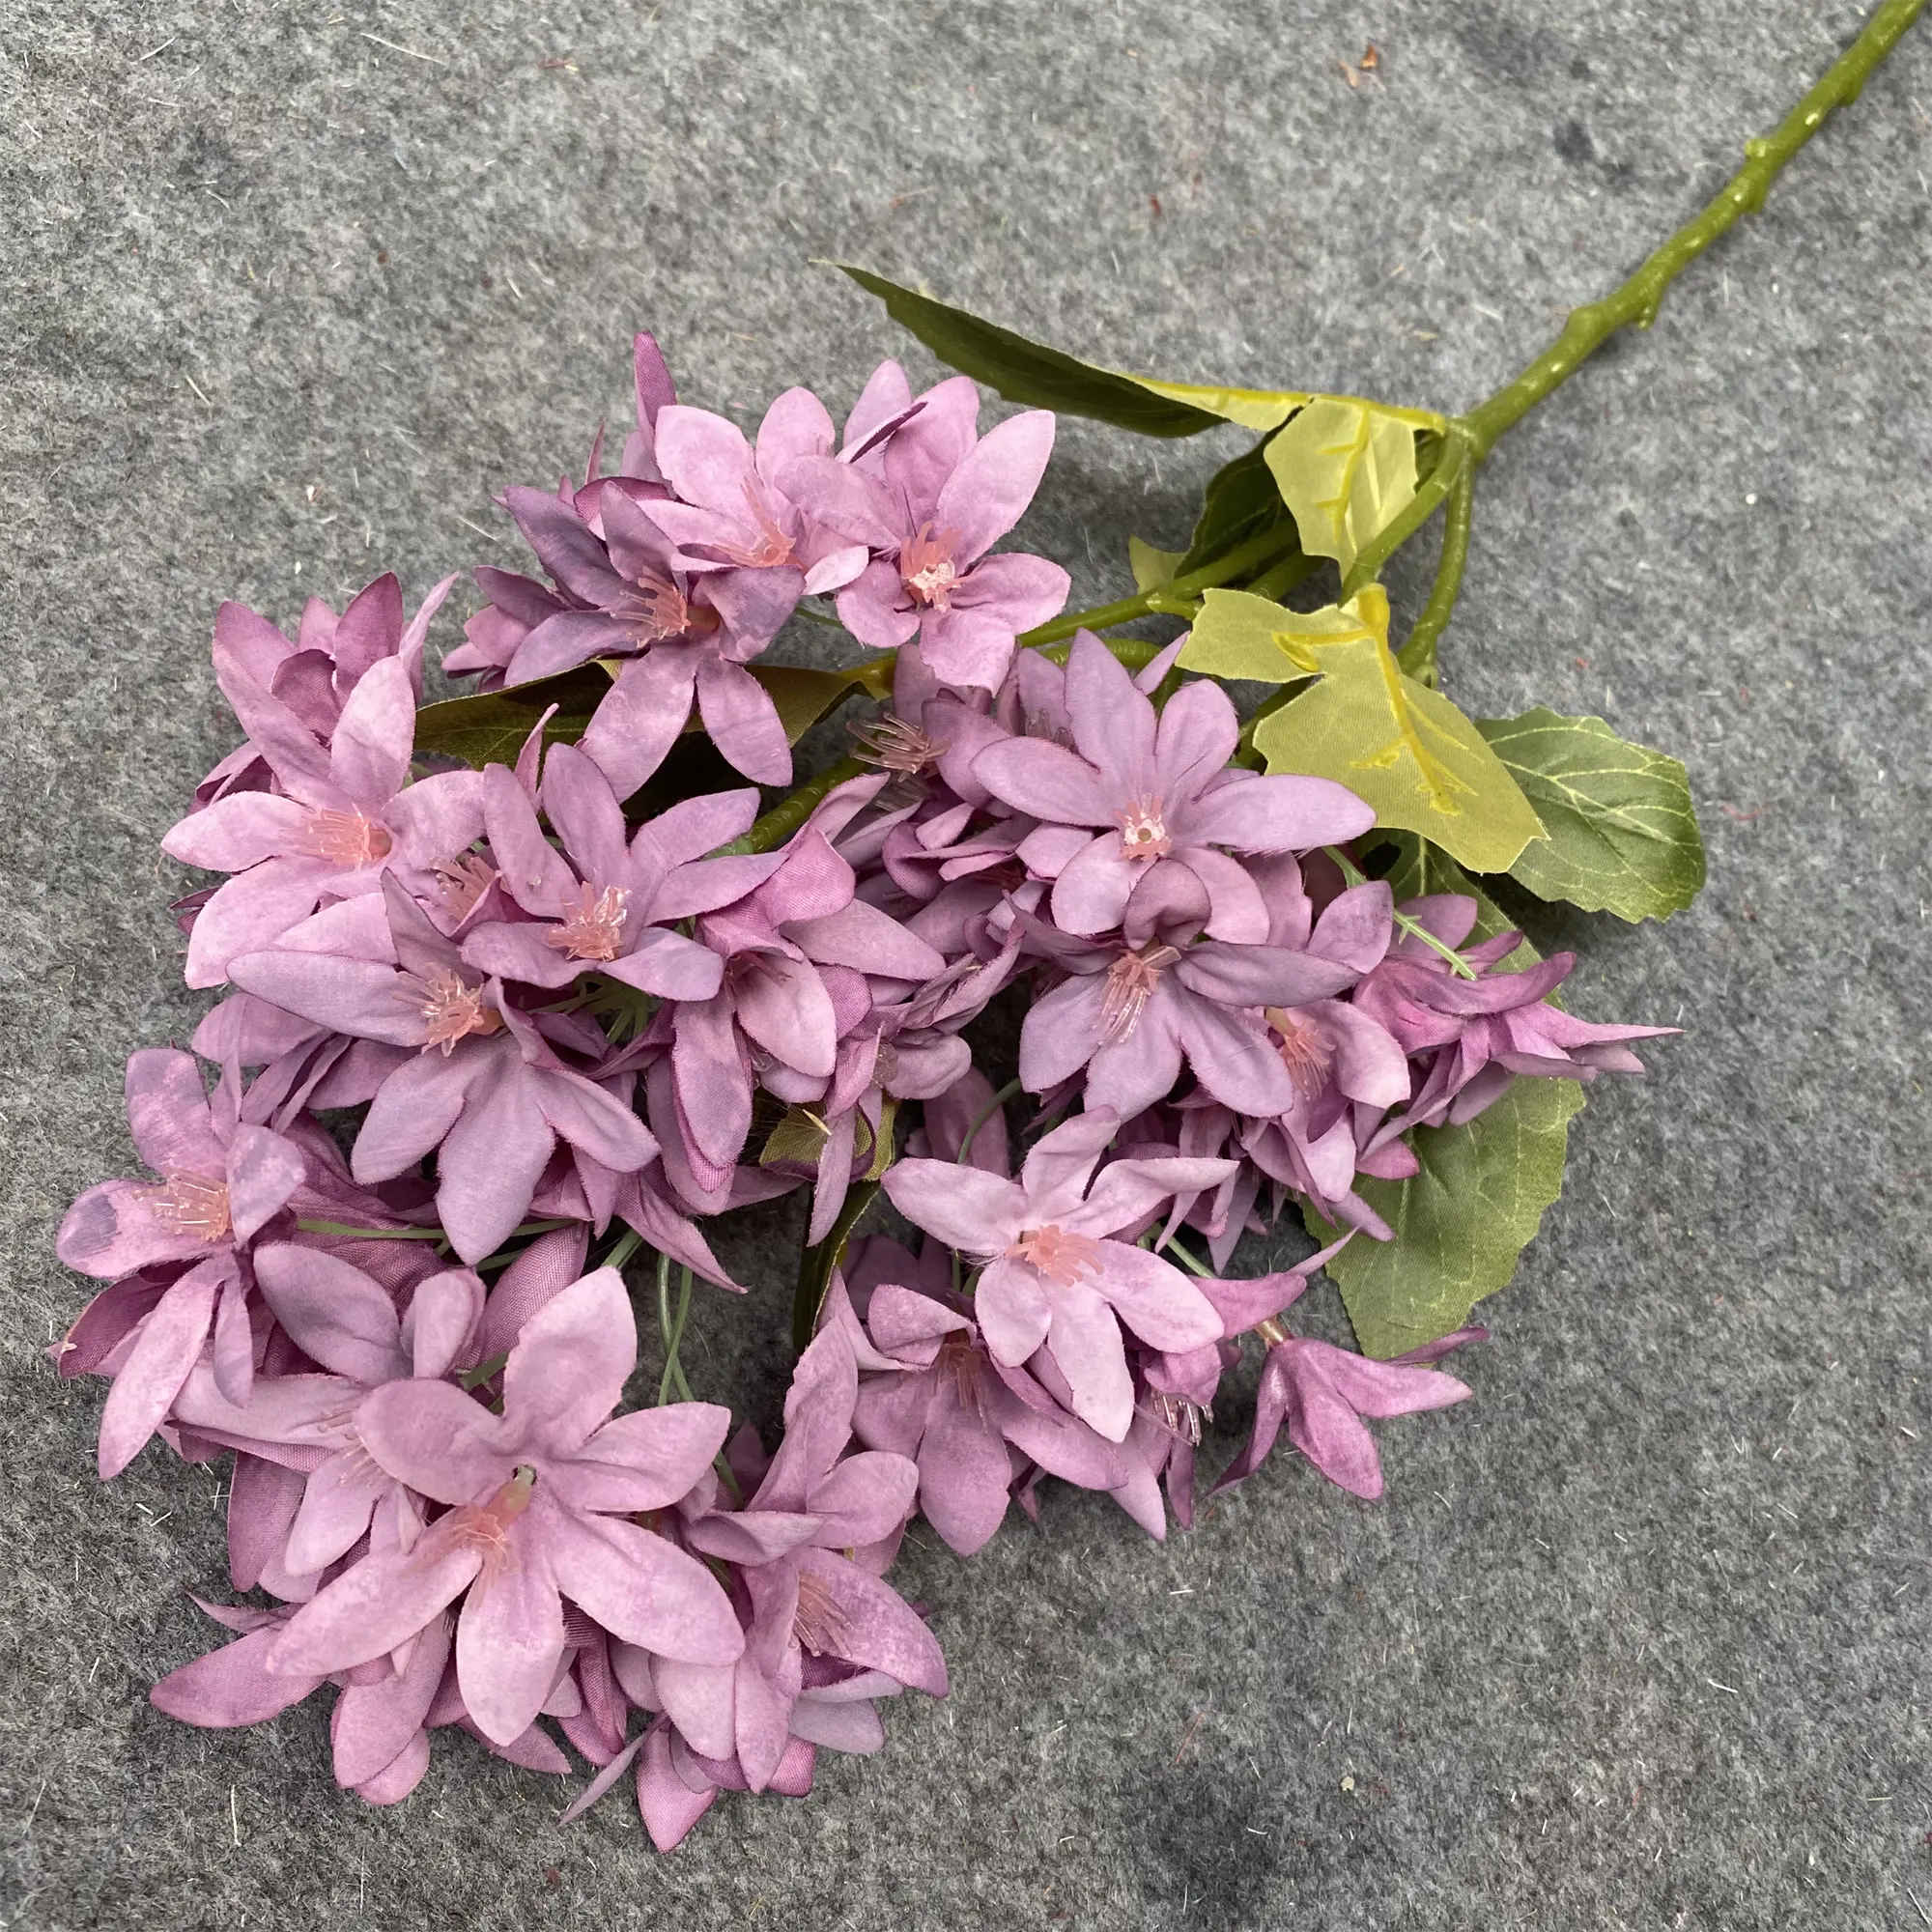 Prezzo all'ingrosso personalizzato 5-ramo di ghiaccio orchidea appesa a muro fiori artificiali per la decorazione matrimonio